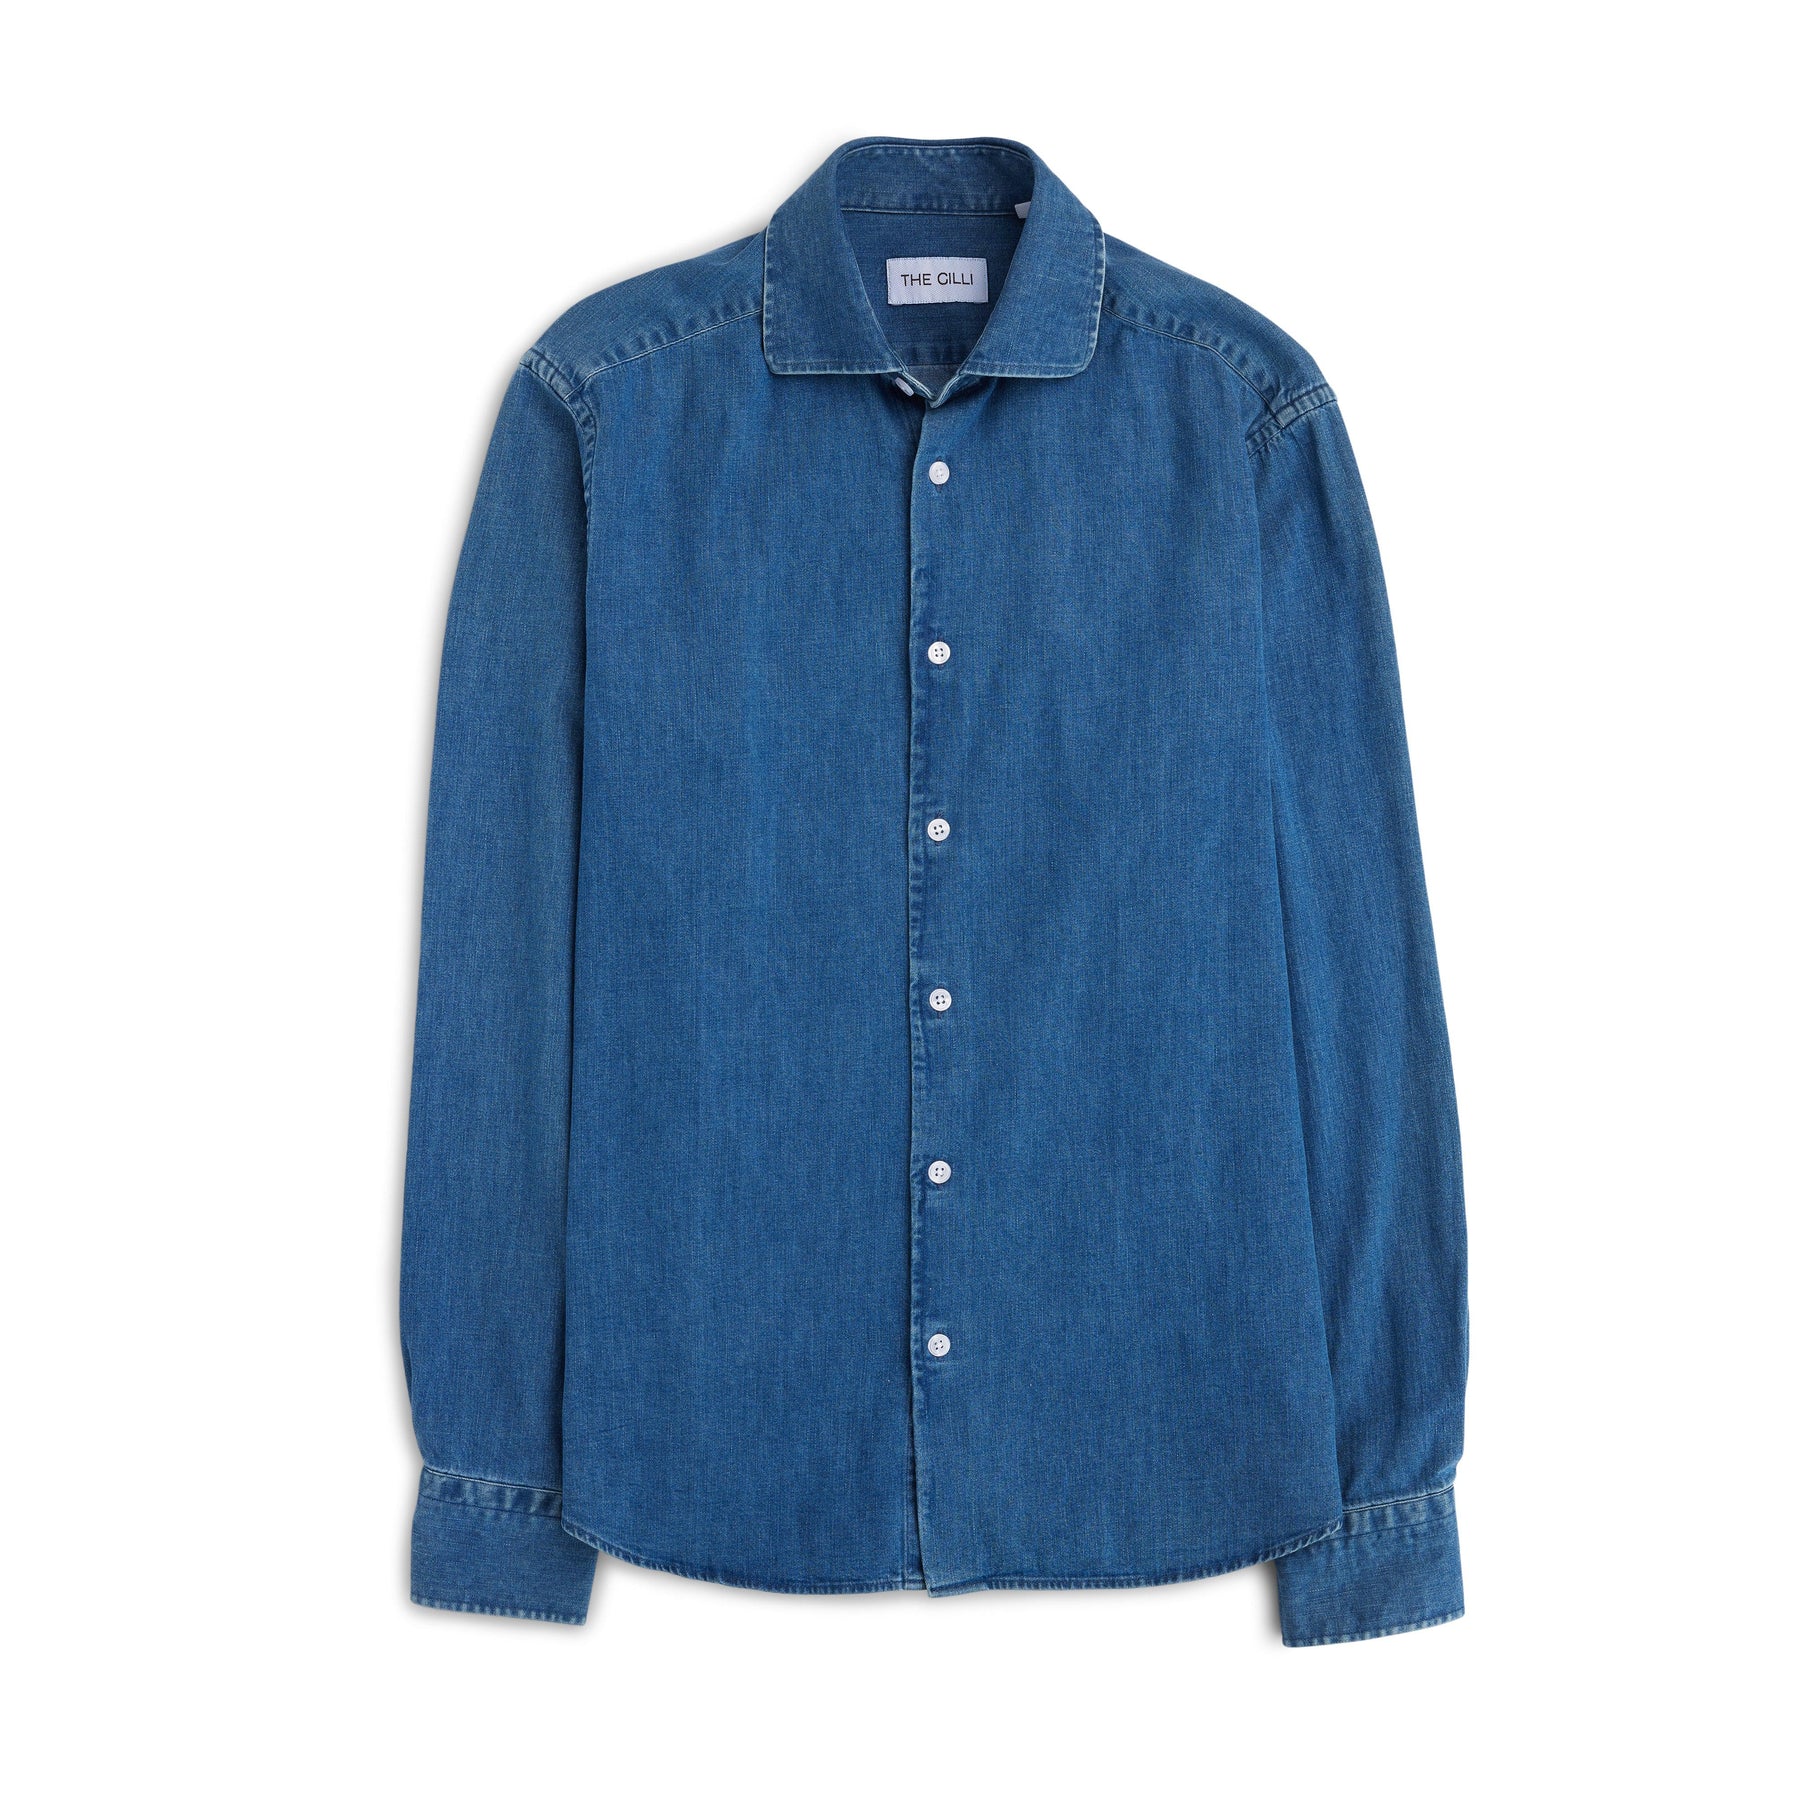 Luca Denim Shirt Blå-Skjorte-The Gilli-Phrase